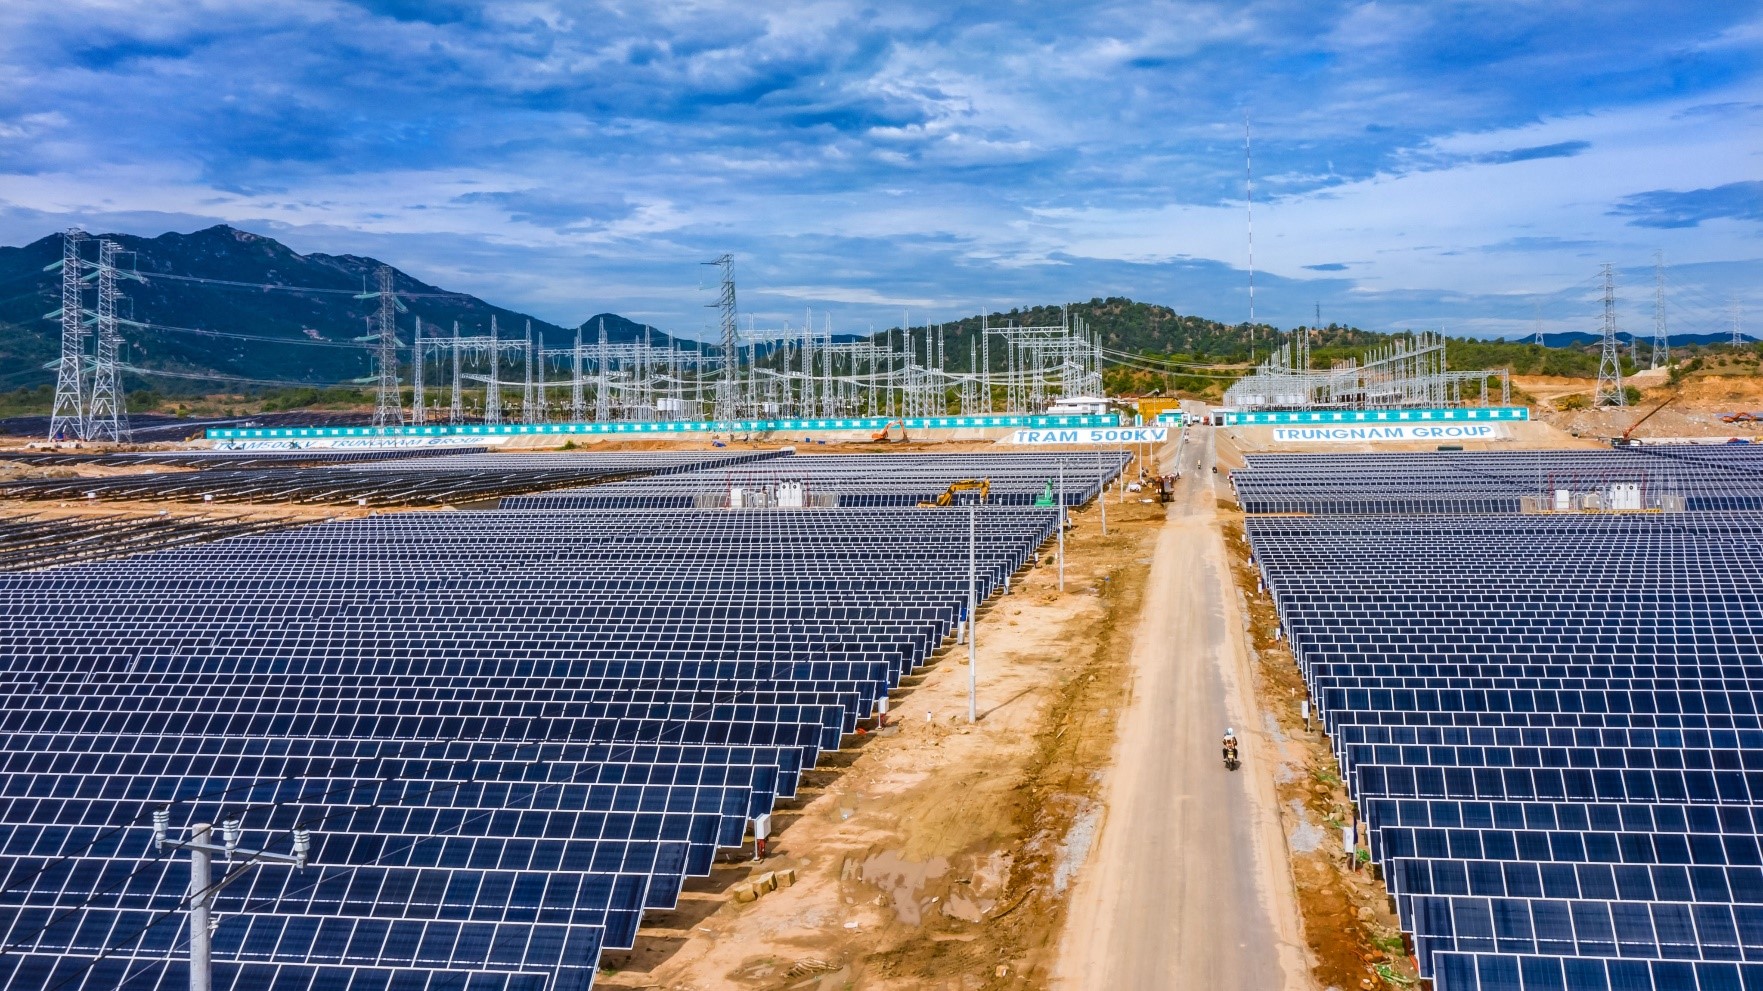 Nhà máy điện mặt trời Trung Nam – Thuận Nam có công suất lắp đặt 450 MW nhưng EVN hiện chỉ mua 278 MW.